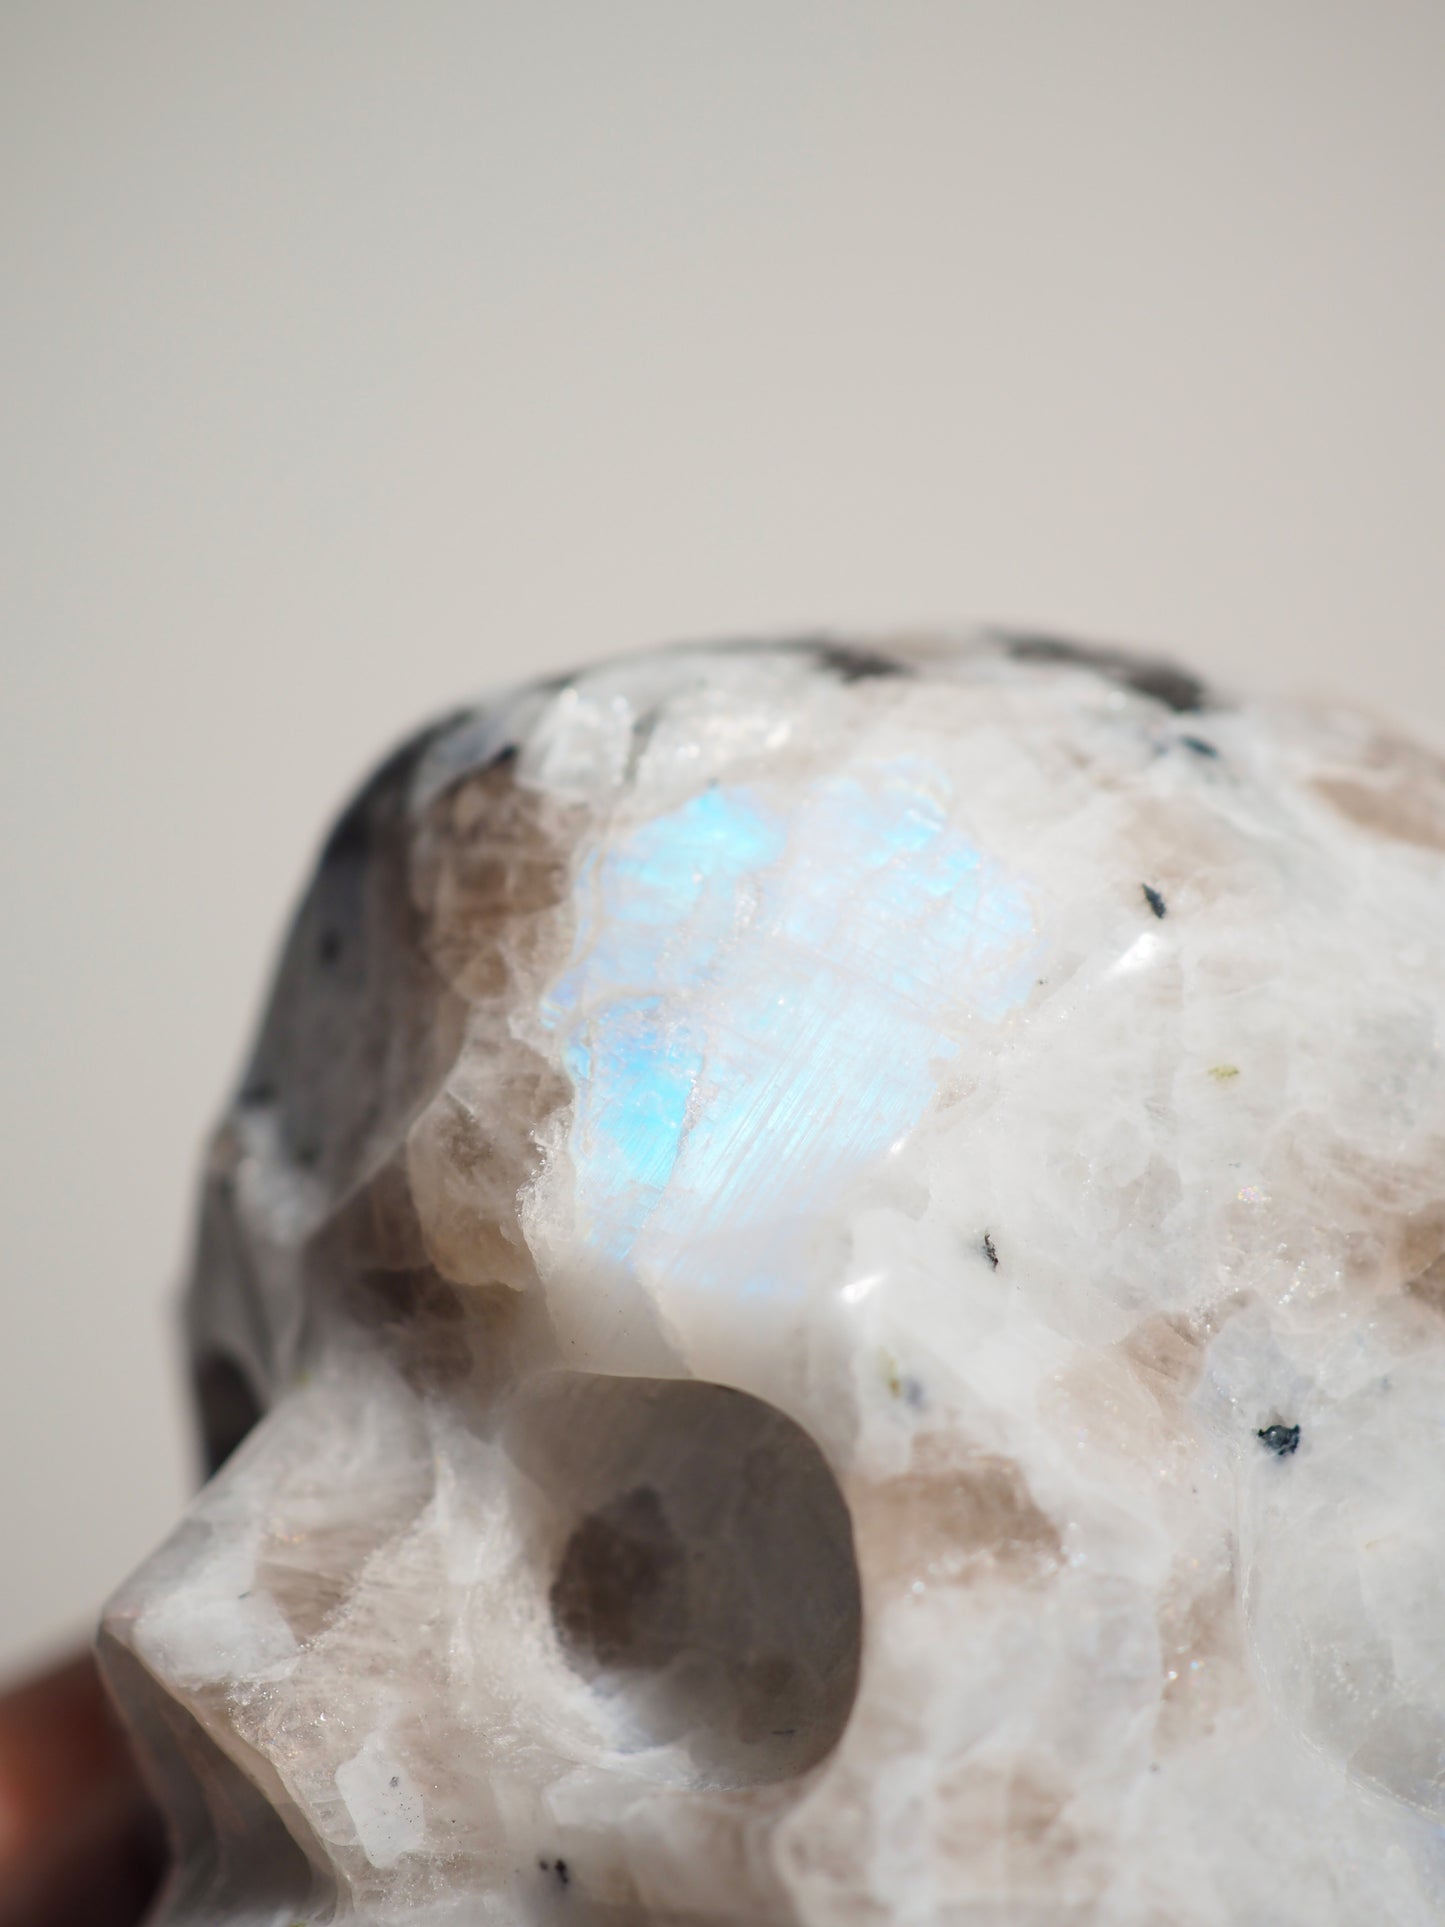 Regenbogen Mondstein Totenkopf . Rainbow Moonstone Skull ca. 11 x 10 cm xxx g - aus Indien . Handcarved in China  High Quality